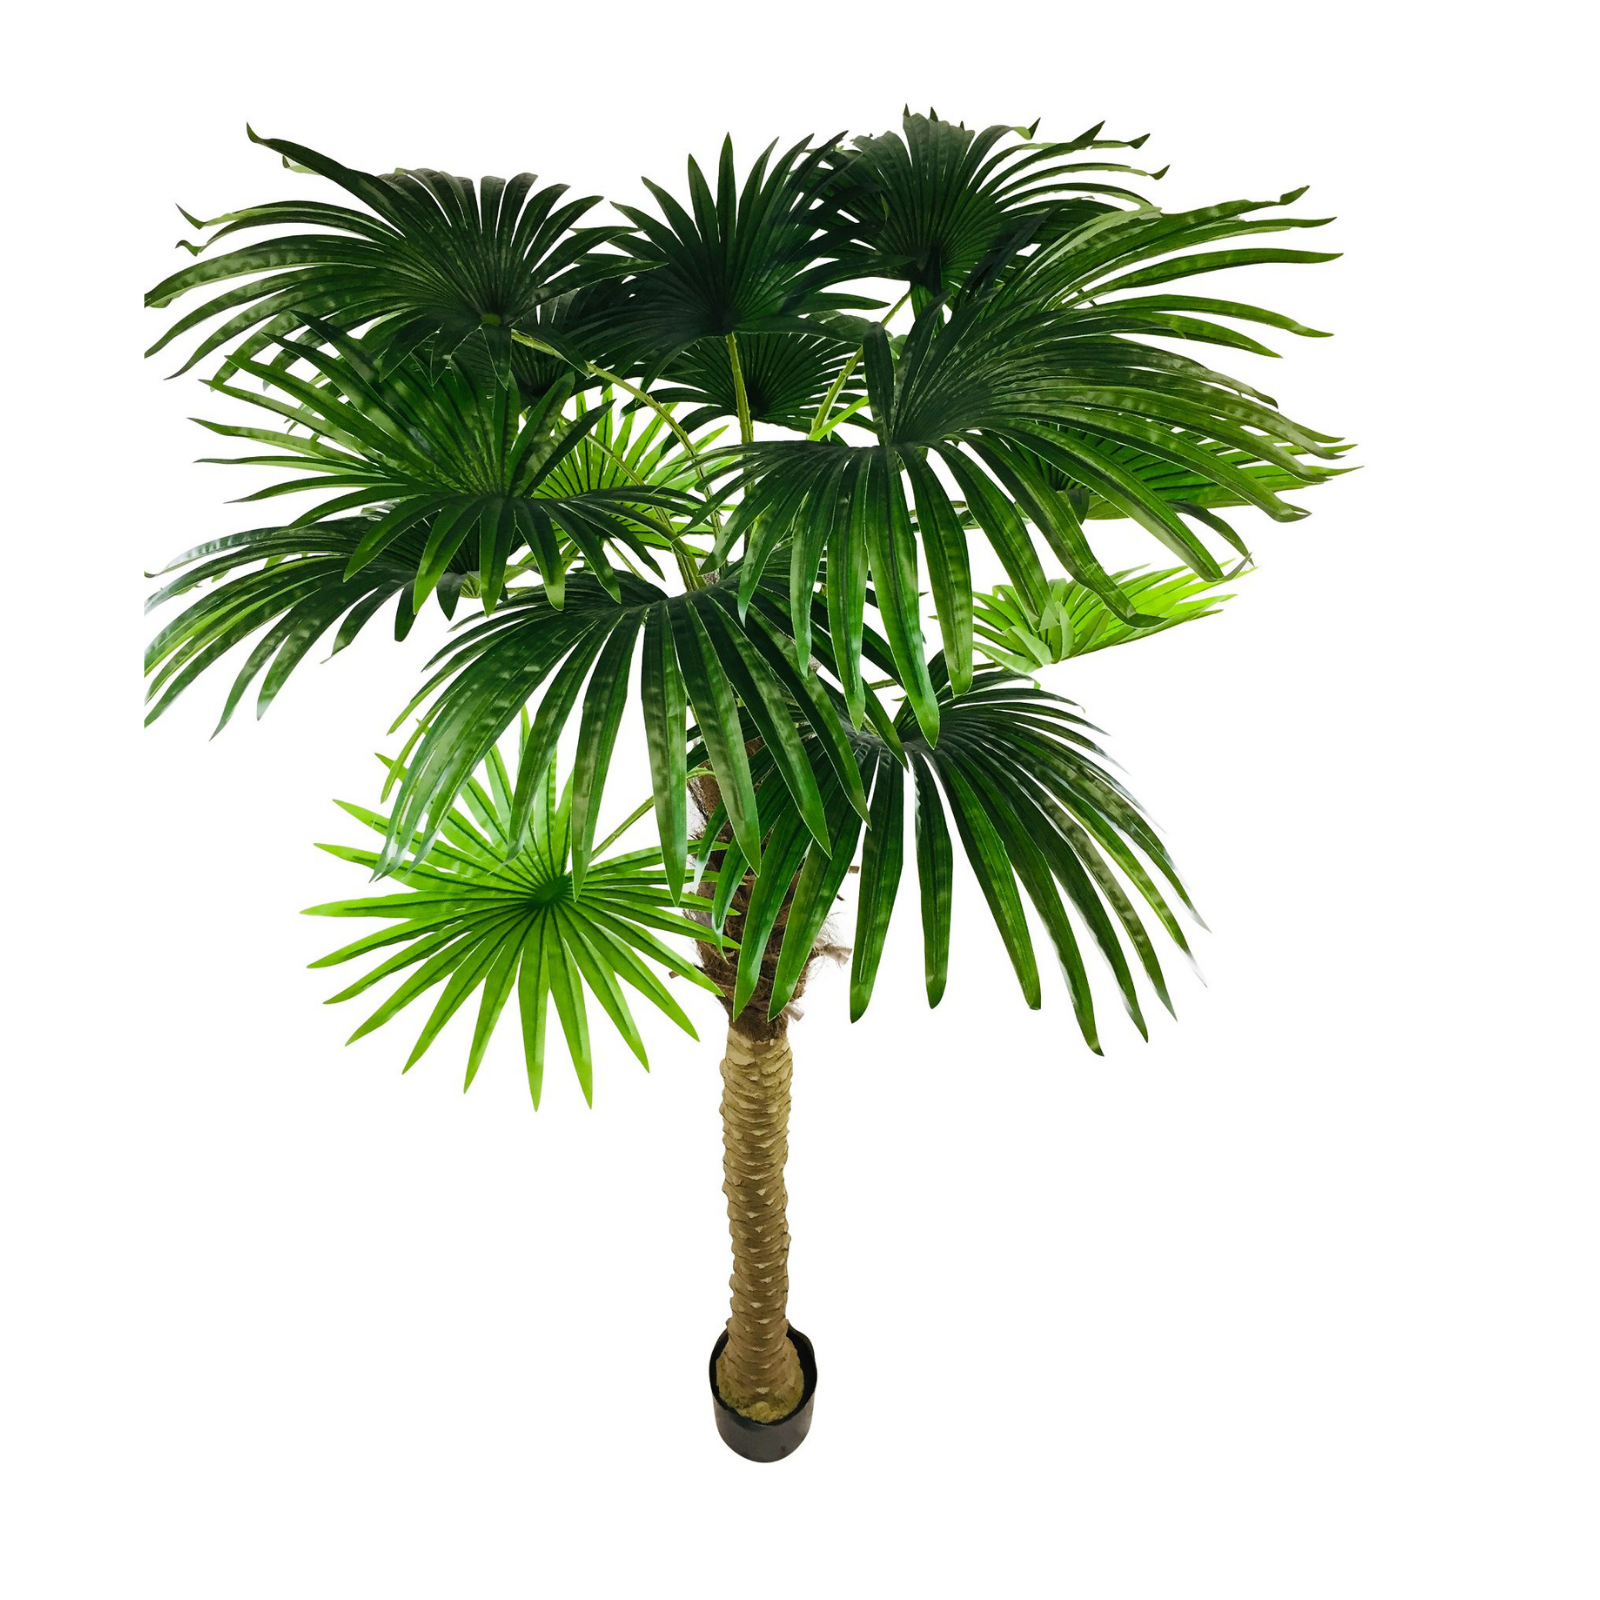 Artificial Fan Palm Tree 190cm